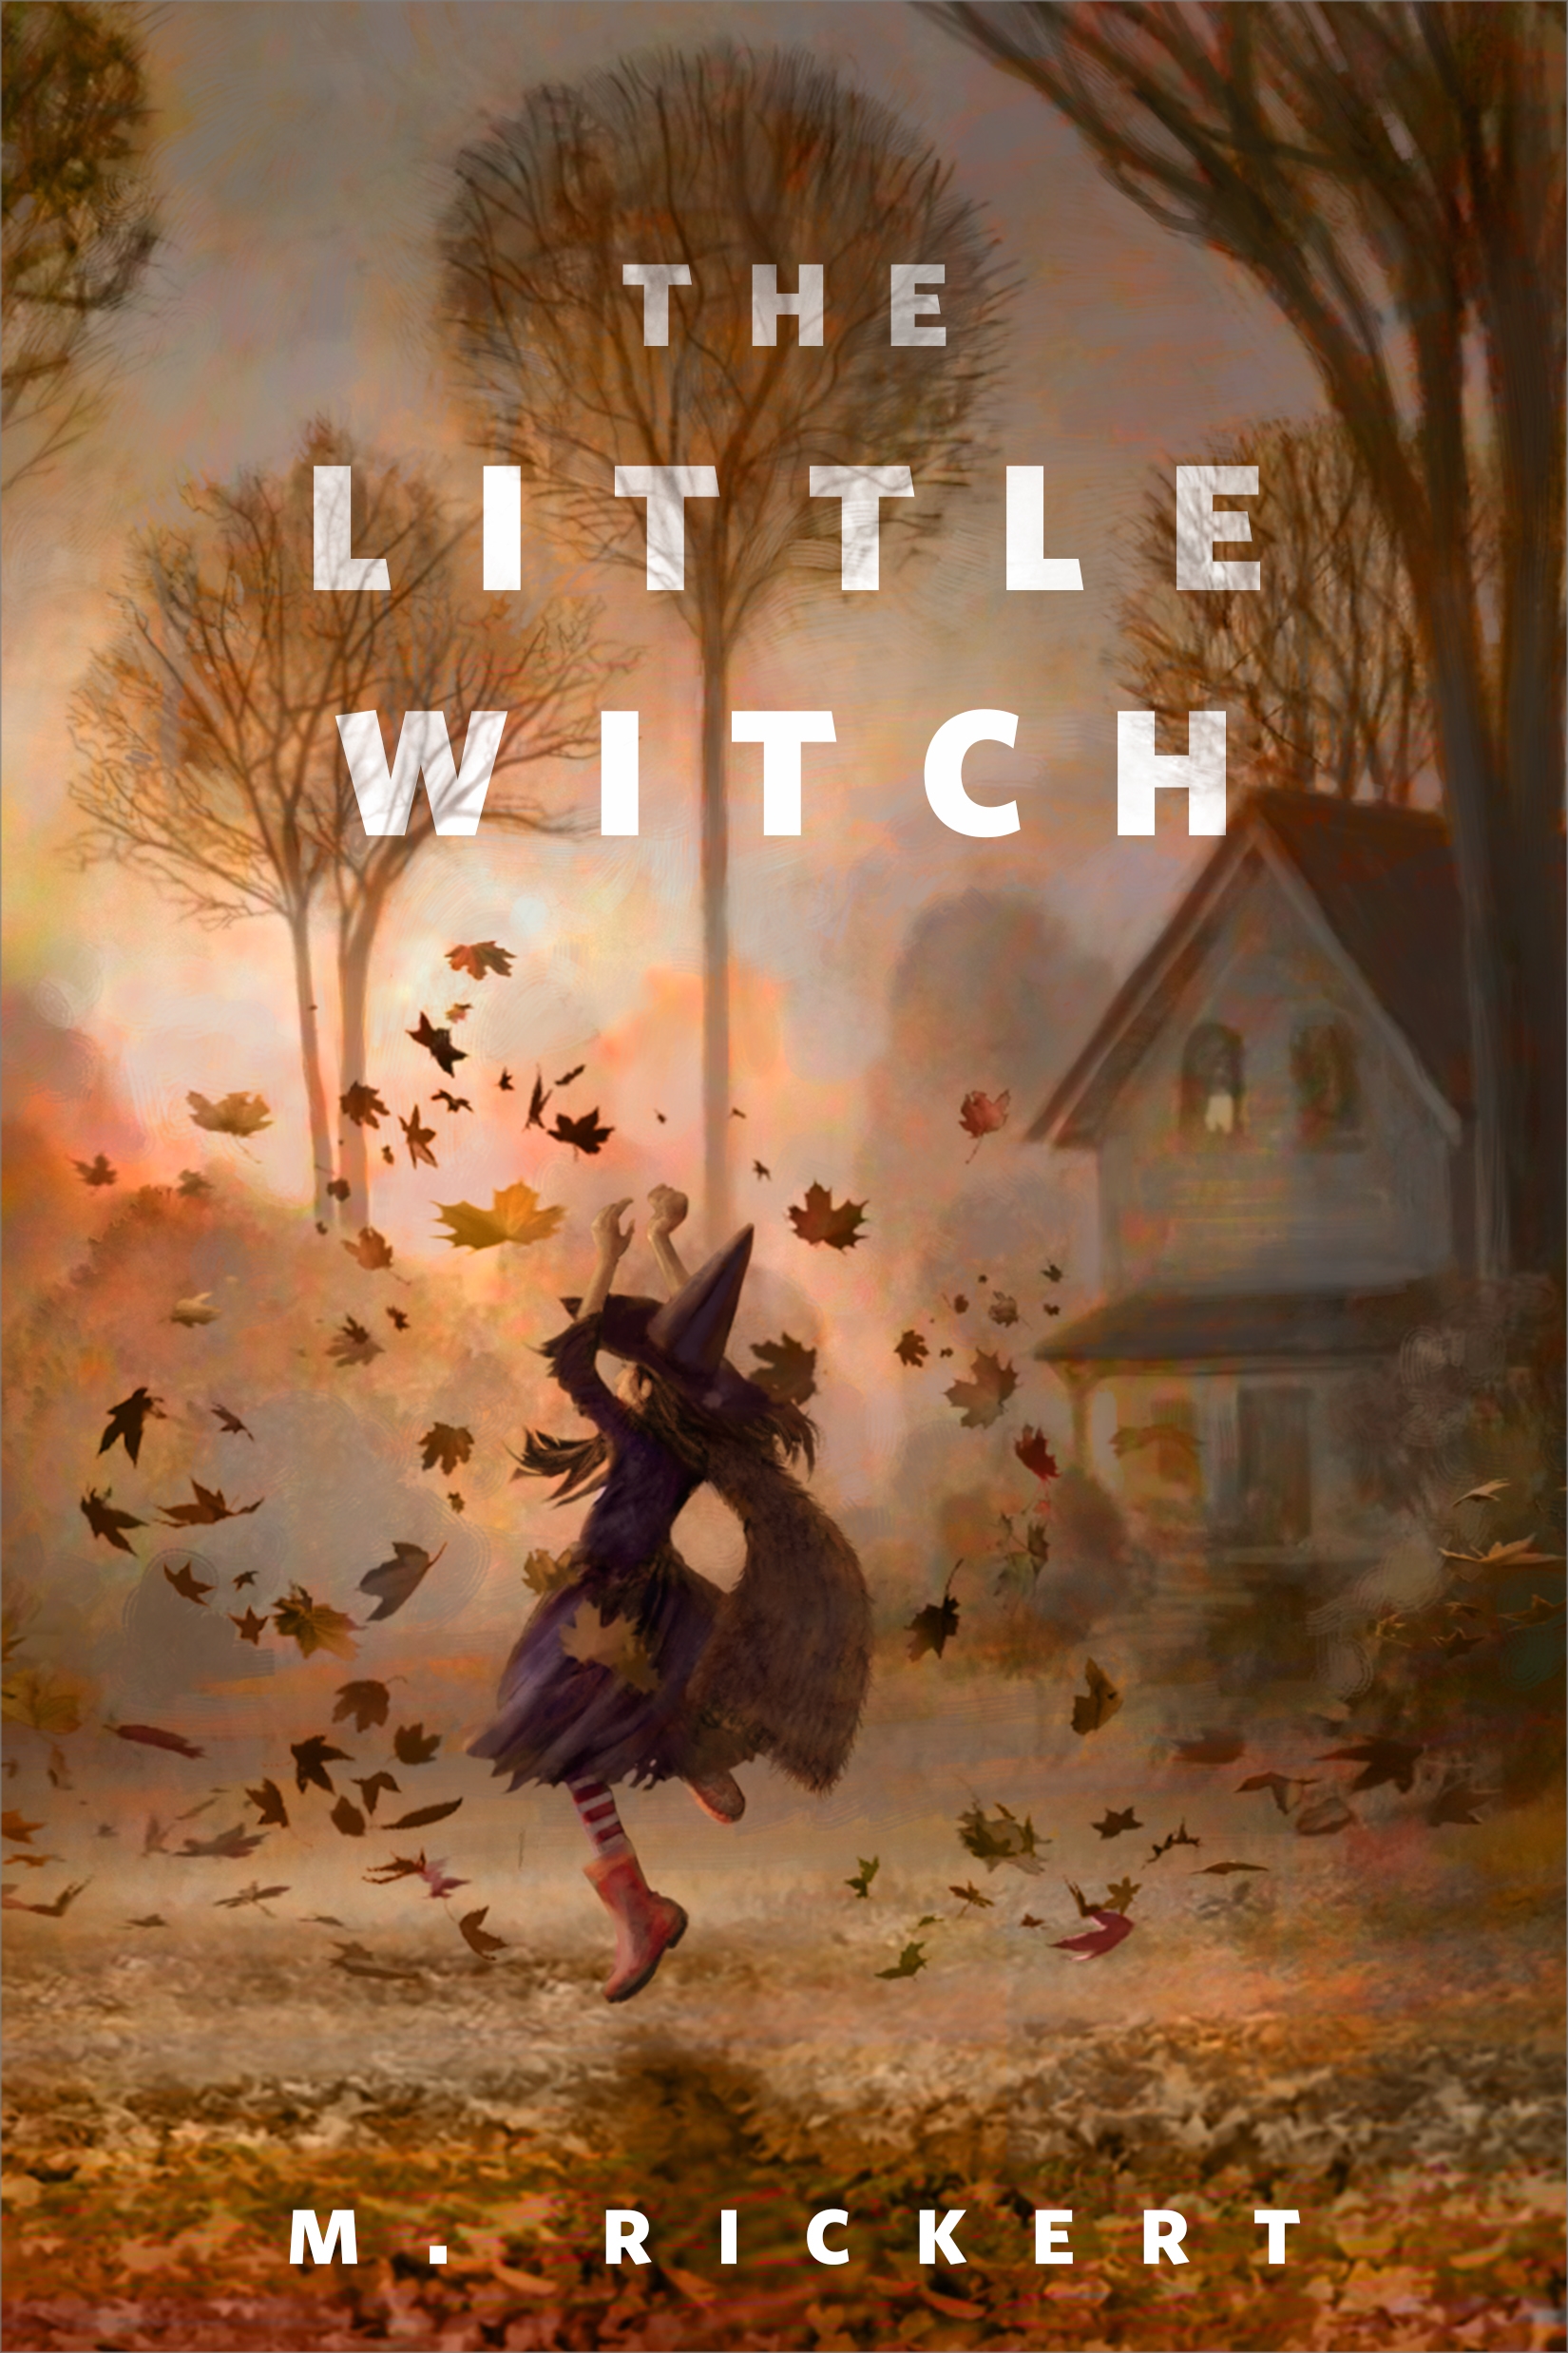 The Little Witch : A Tor.com Original by M. Rickert